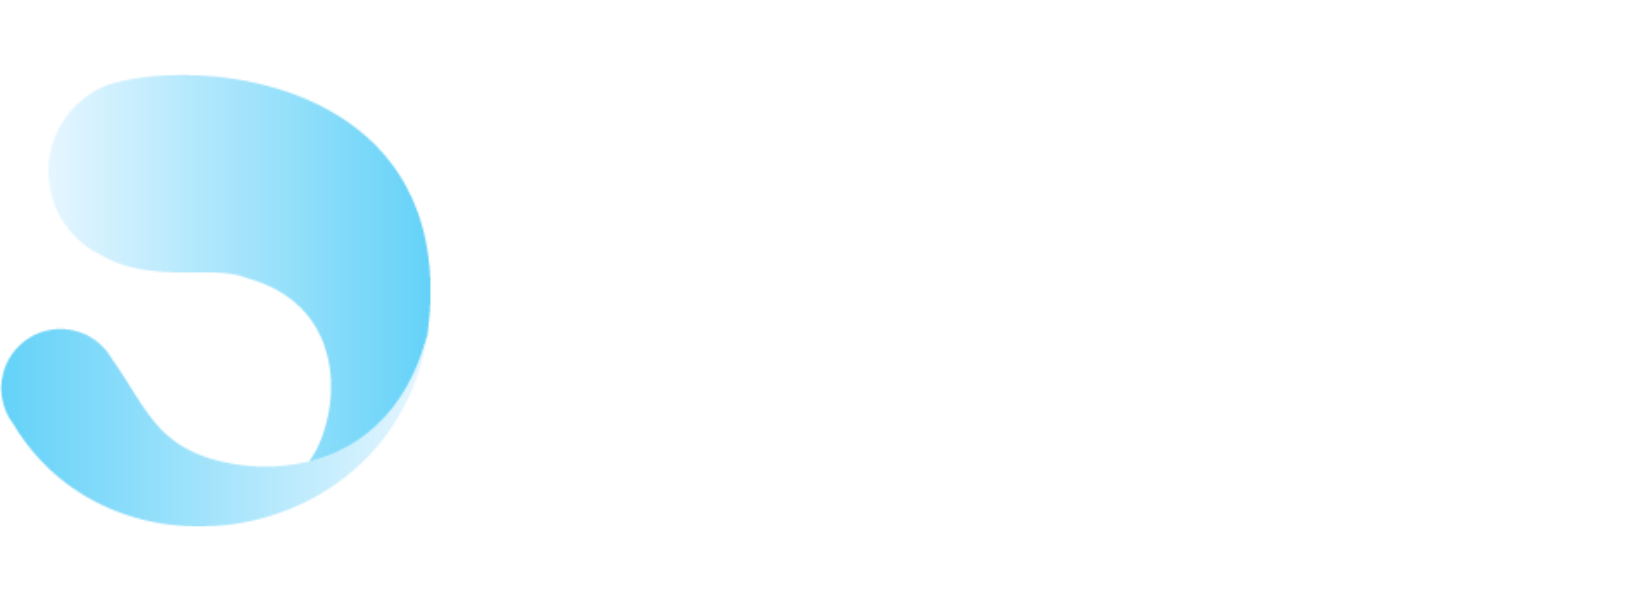 MJC de Bolbec